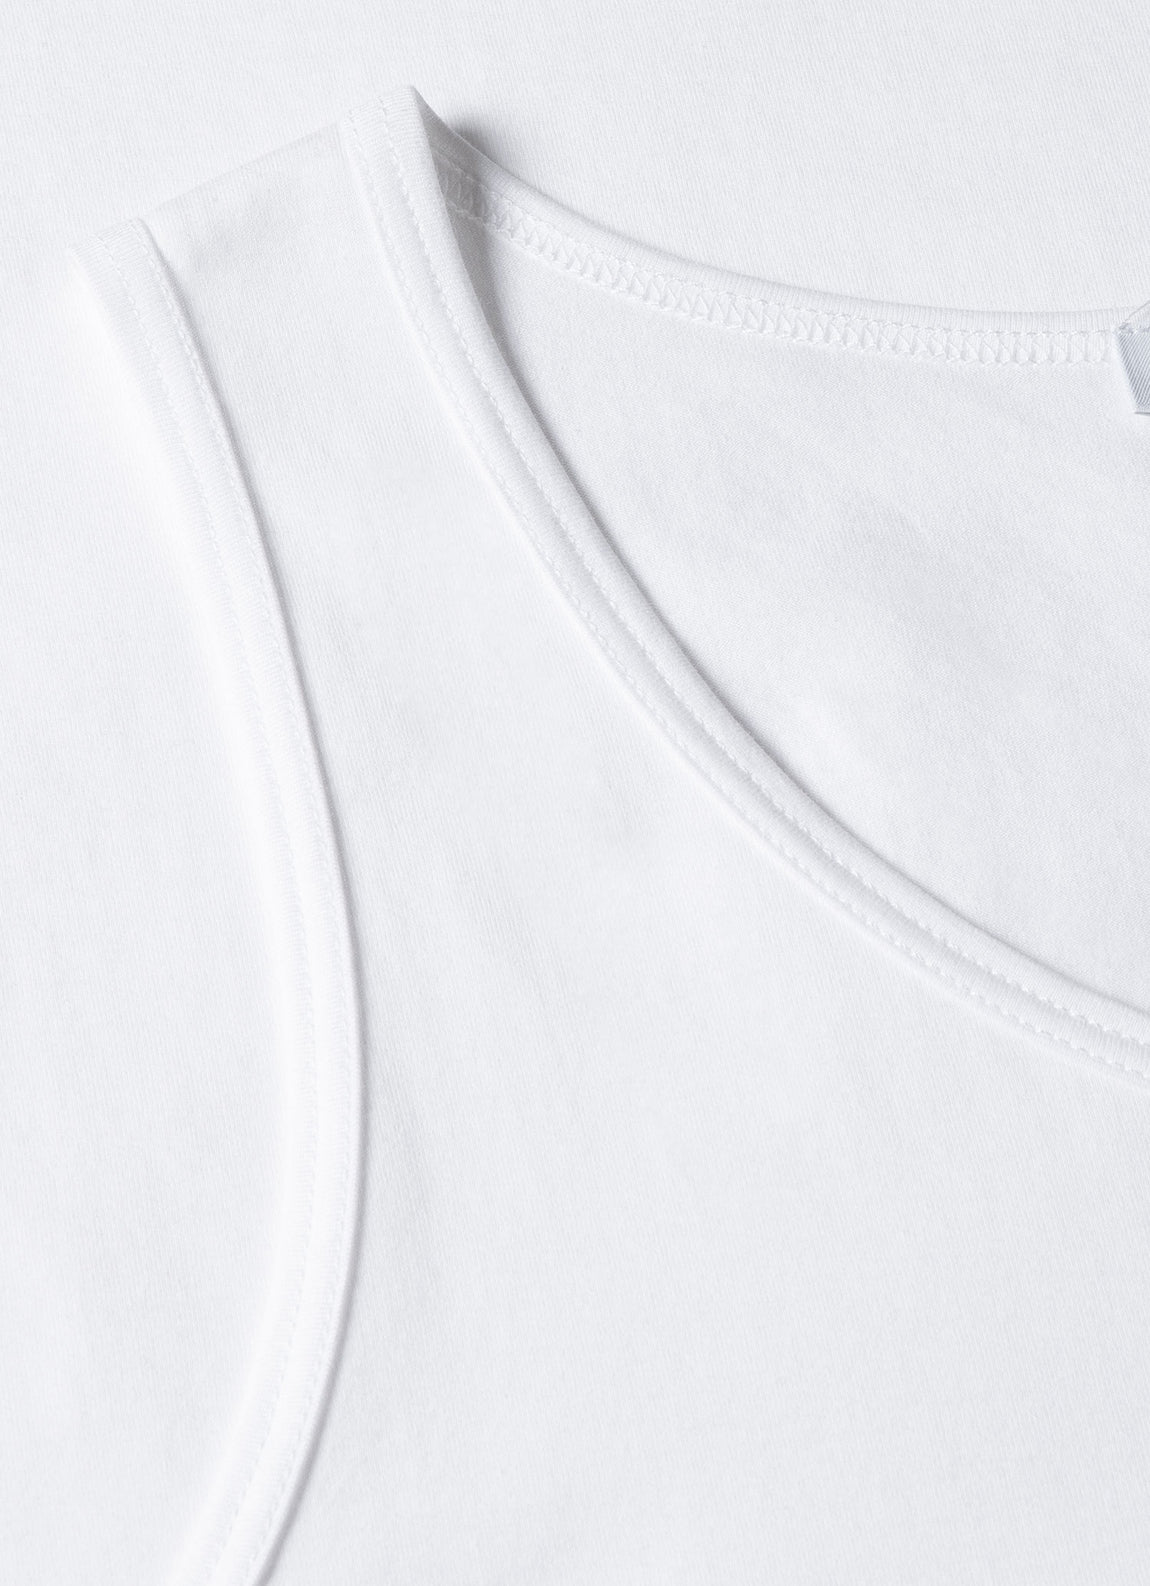 Men's Superfine Cotton Underwear Vest in White | Sunspel